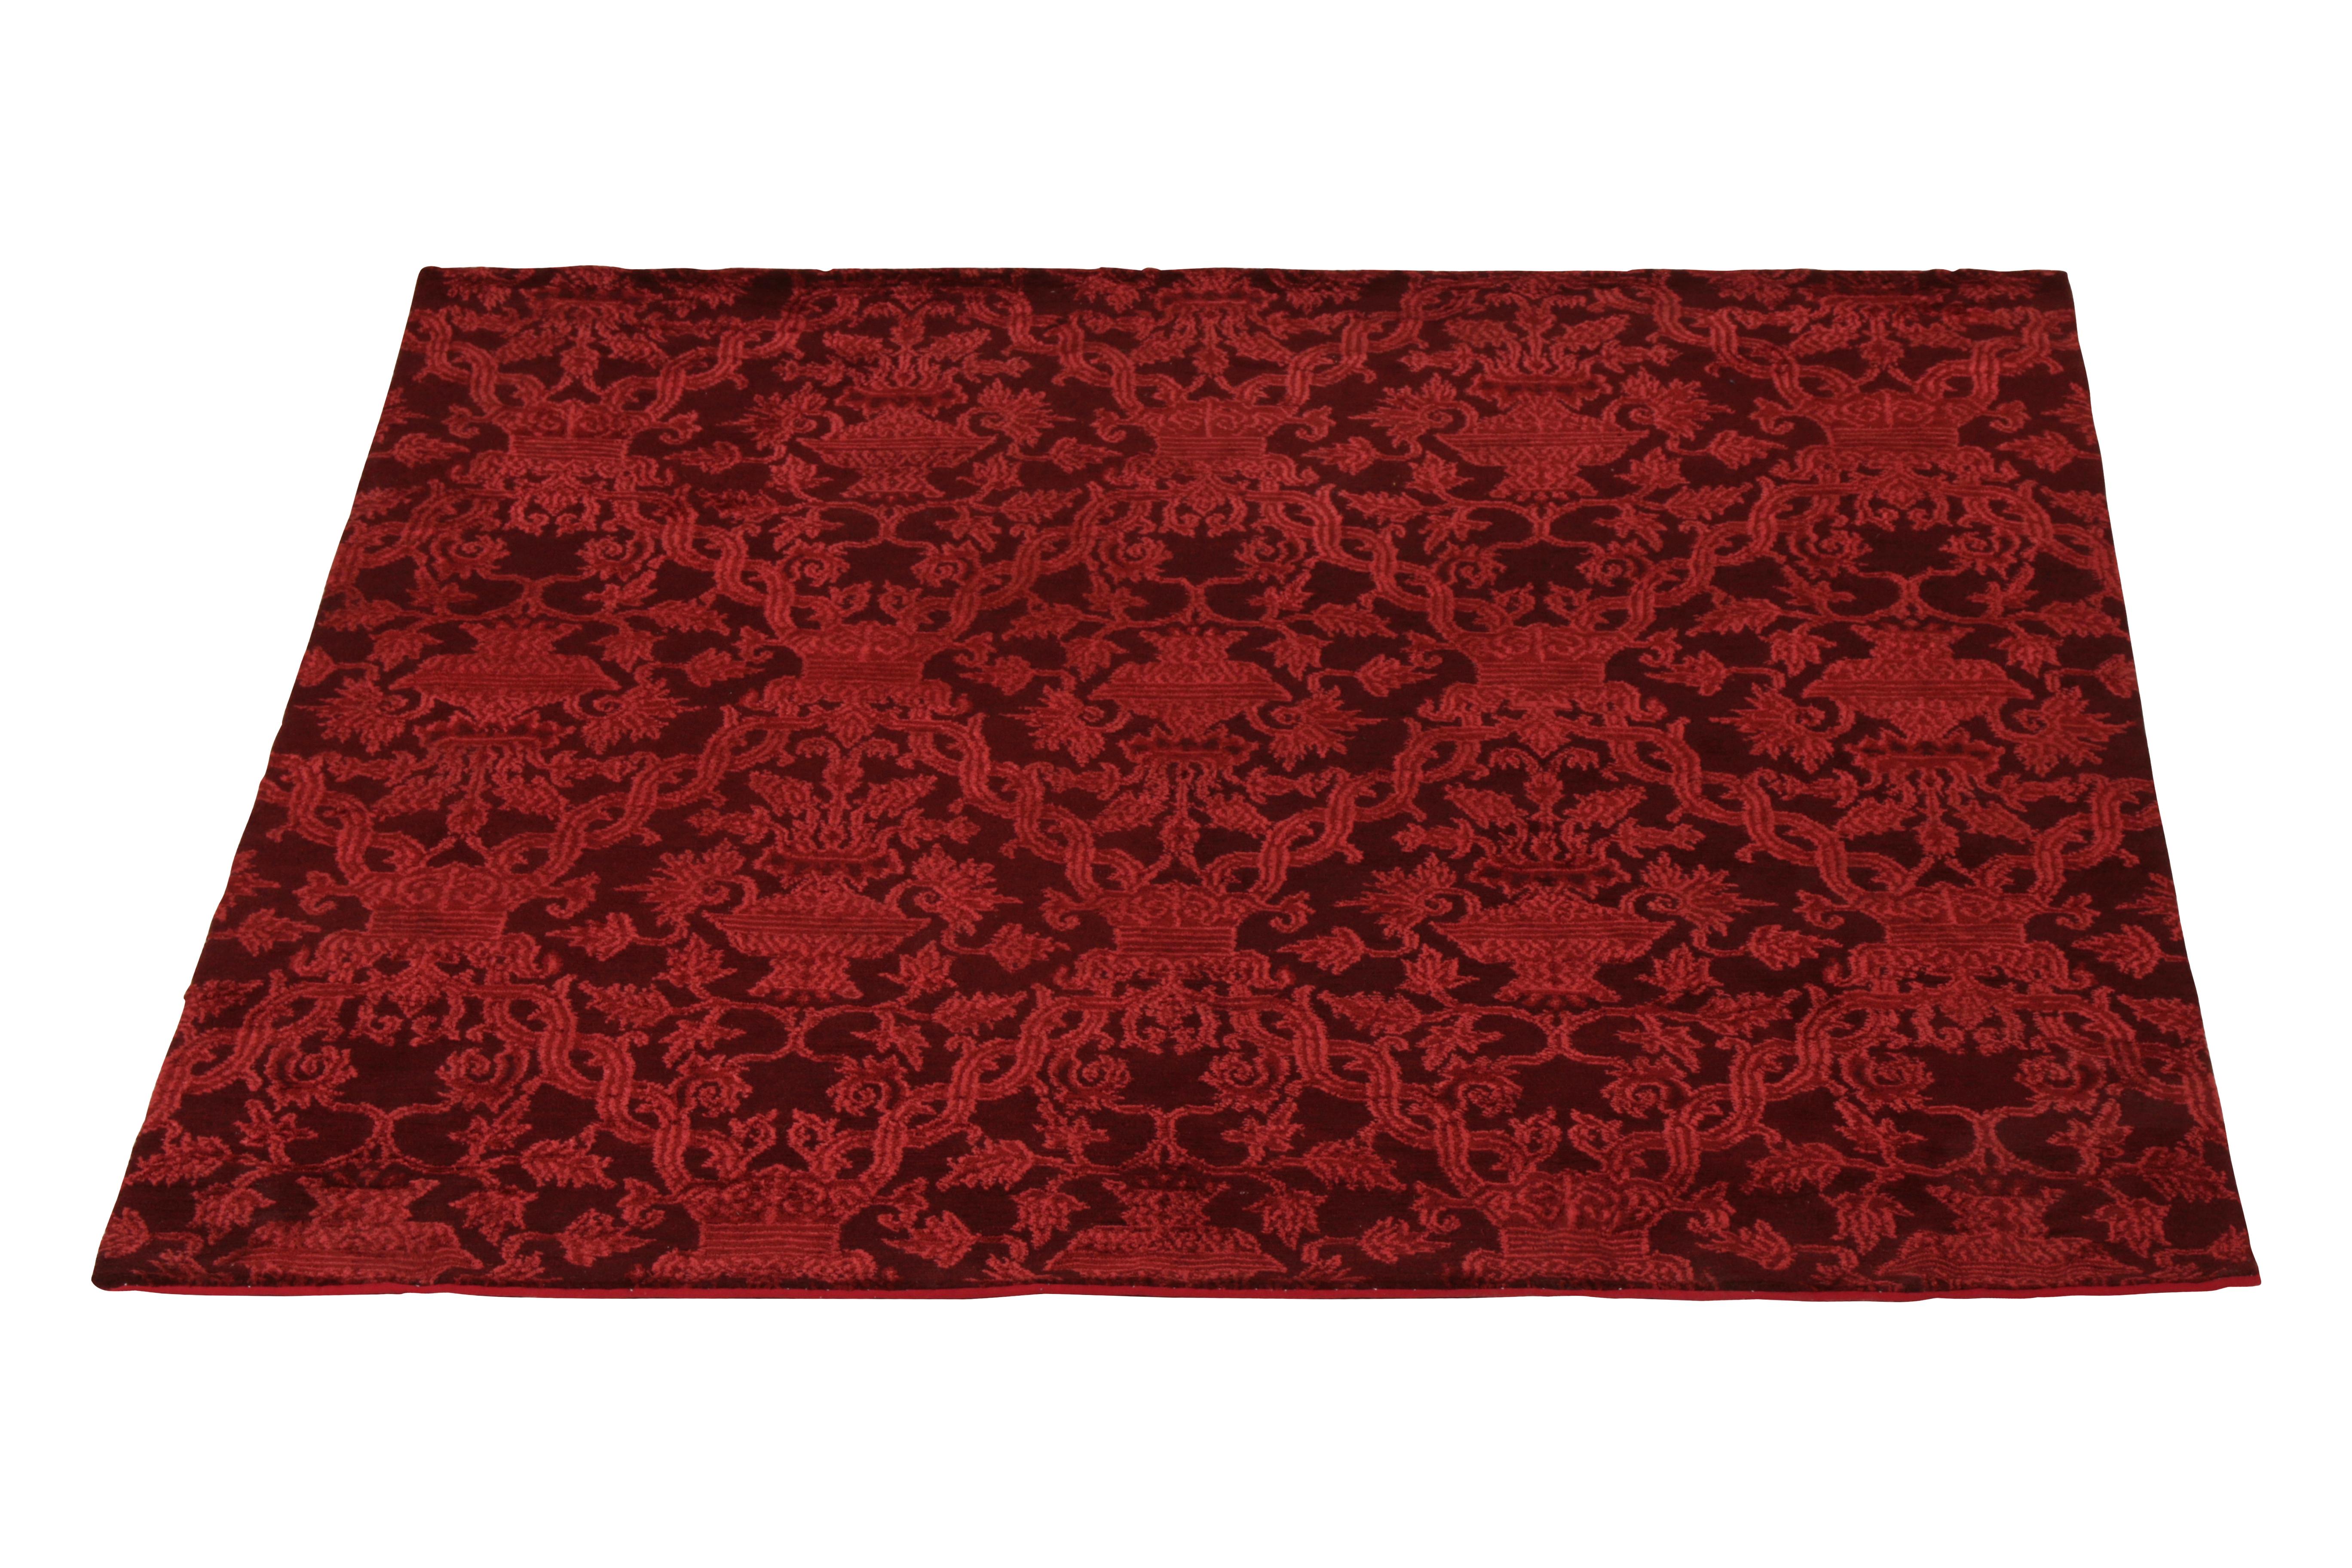 Noué à la main dans un mélange de laine et de soie, ce tapis carré de 5 x 6 cm fait partie de la collection de tapis européens de Rug & Kilim, qui s'inspire de designs classiques vénérés, comme cette touche de sensibilité italienne dans les teintes